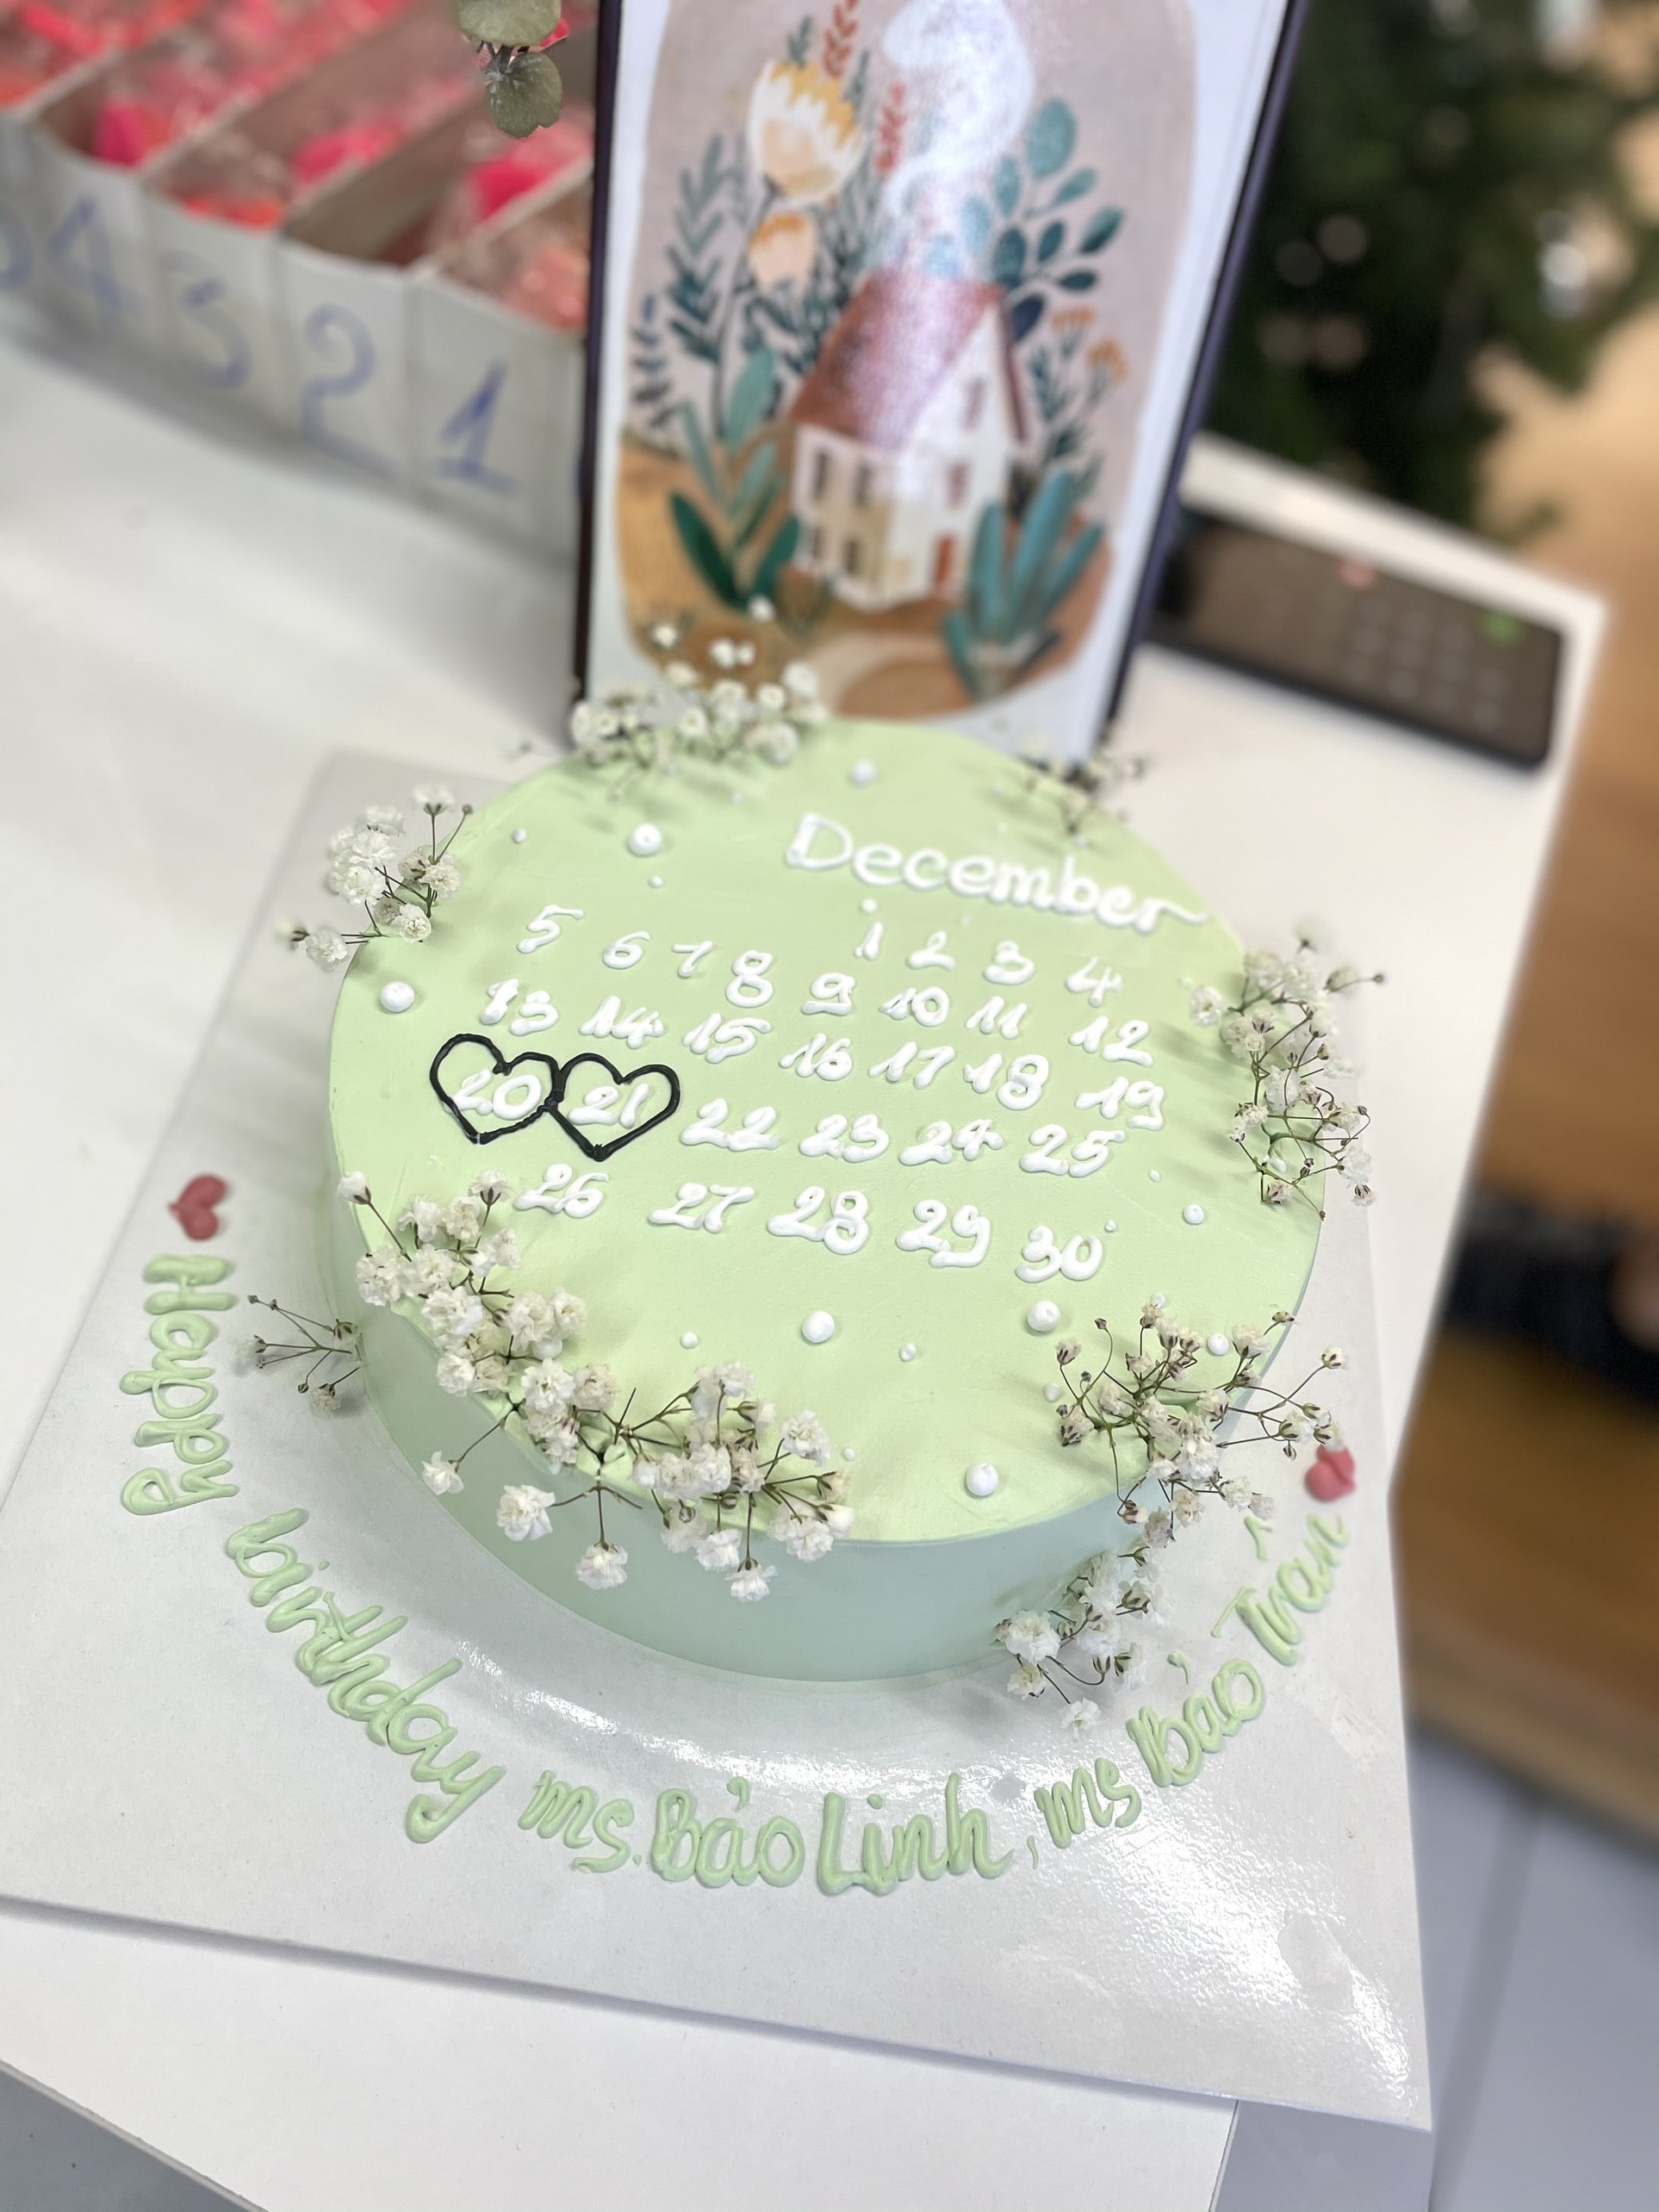 Hãy để chúng tôi giúp bạn tìm kiếm bánh sinh nhật độc đáo cho bạn gái của mình. Với những mẫu bánh đầy sáng tạo và độc đáo, chúng tôi hy vọng sẽ mang lại cho bạn những trải nghiệm tuyệt vời nhất cùng người yêu của mình.